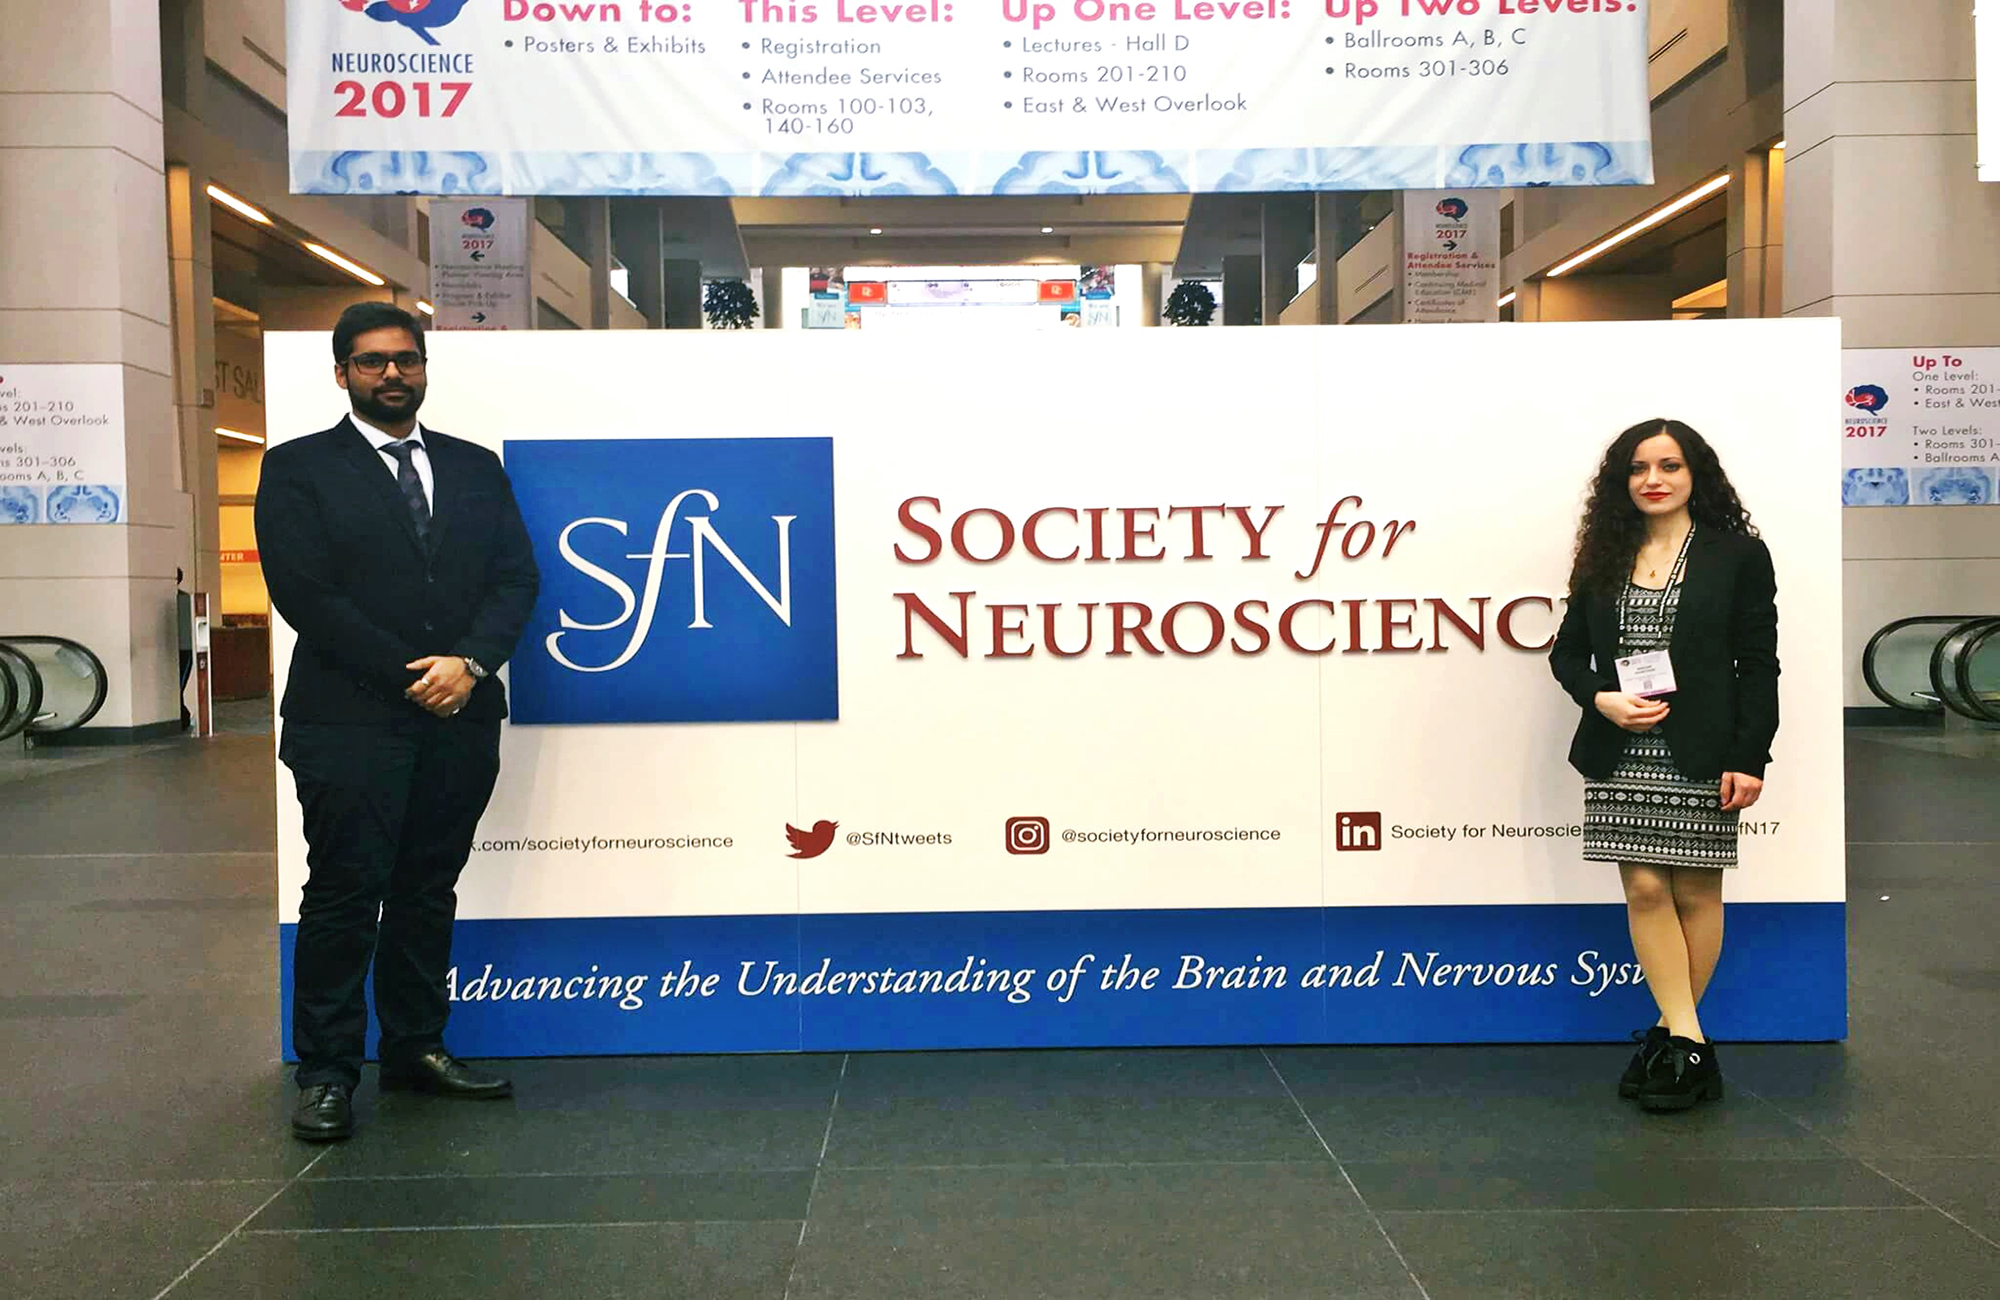 Neuroscience 2017, Washington DC, USA 11-15th November 2017